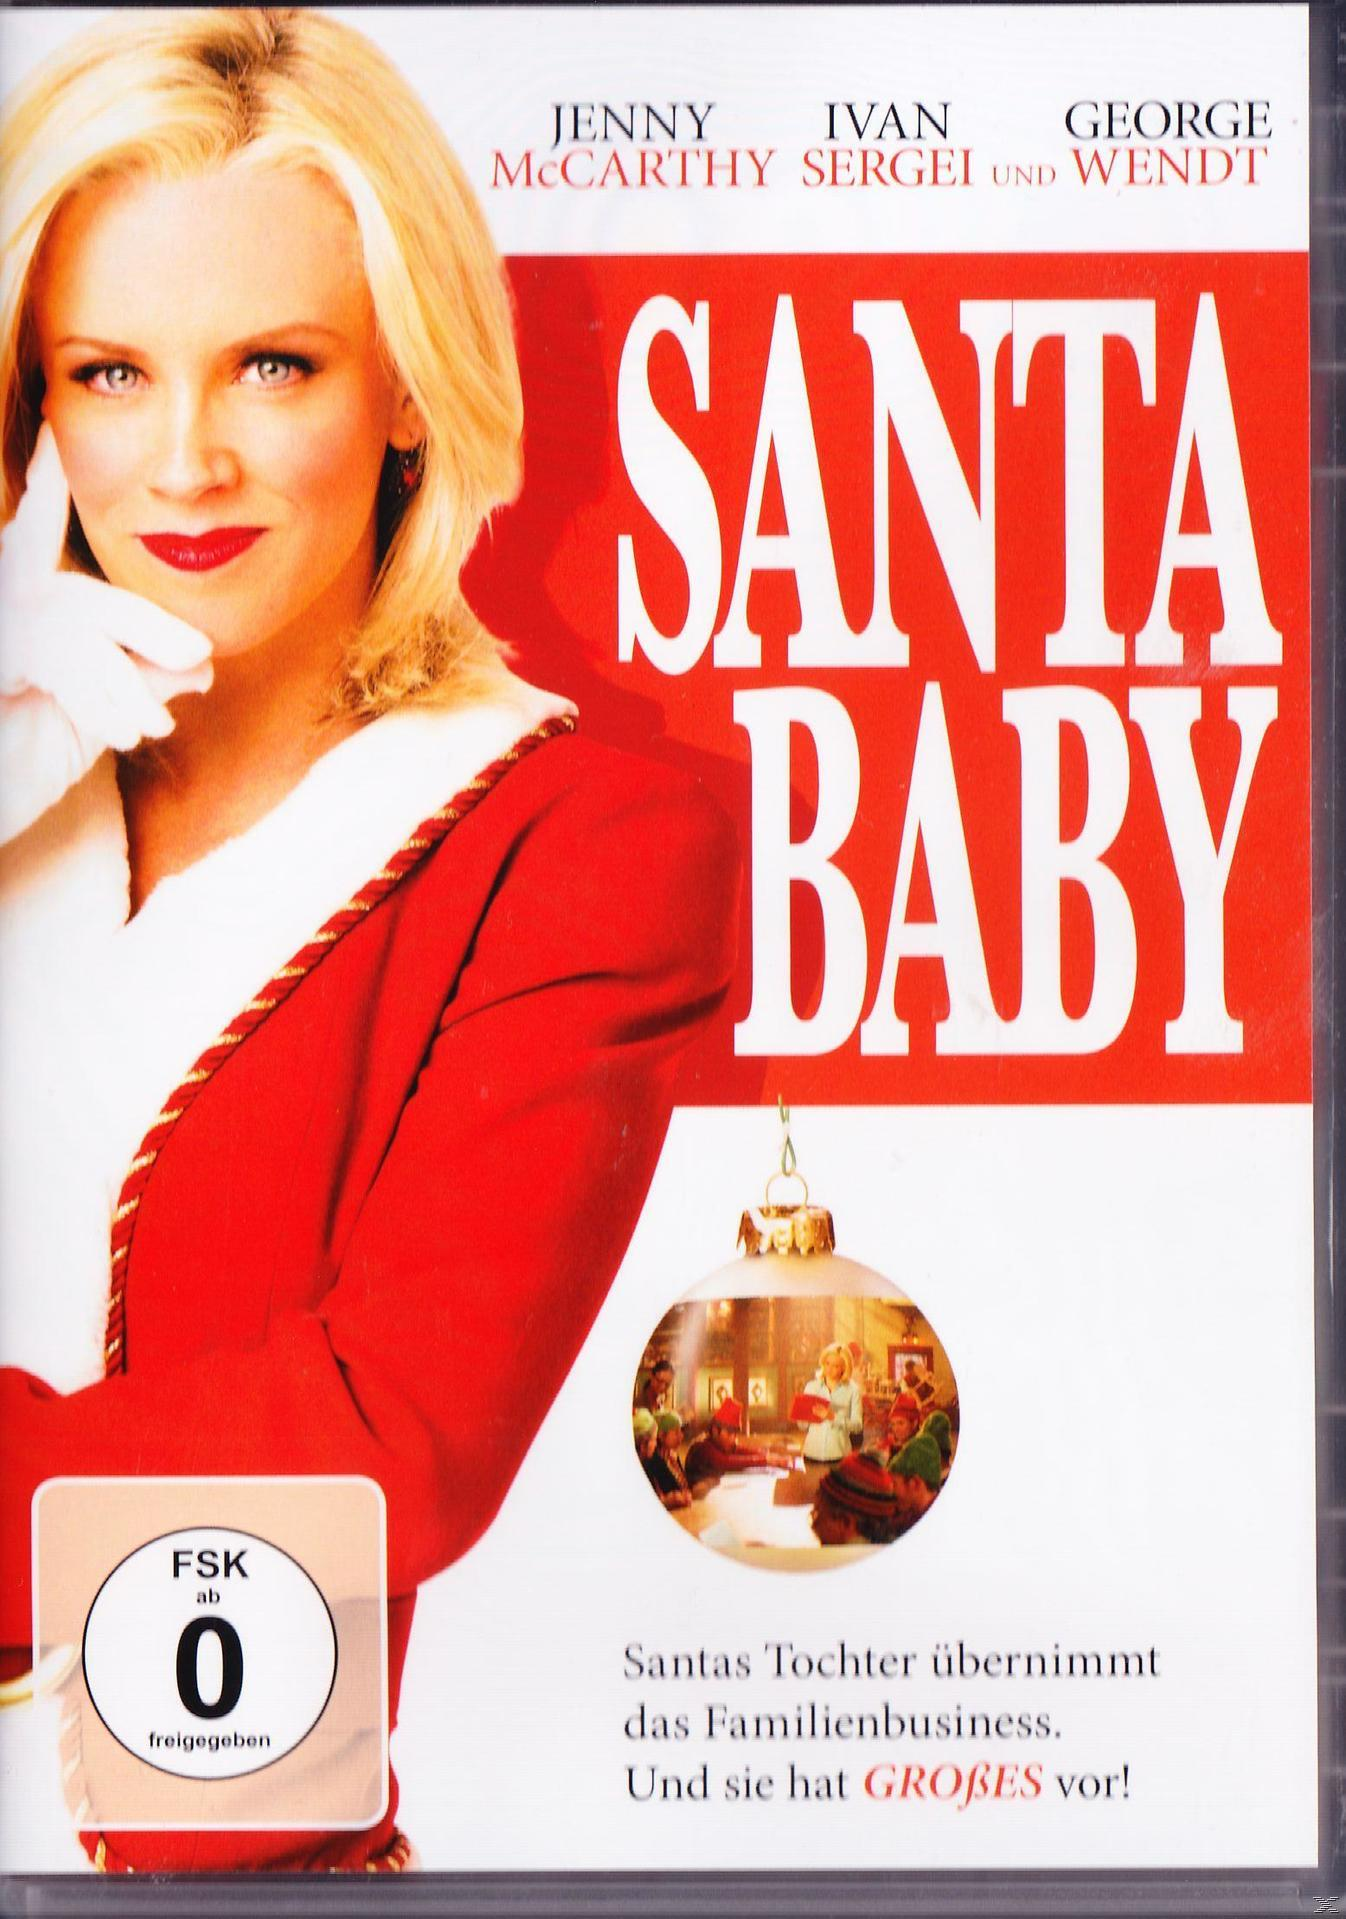 Various (DVD) - - Santa Baby